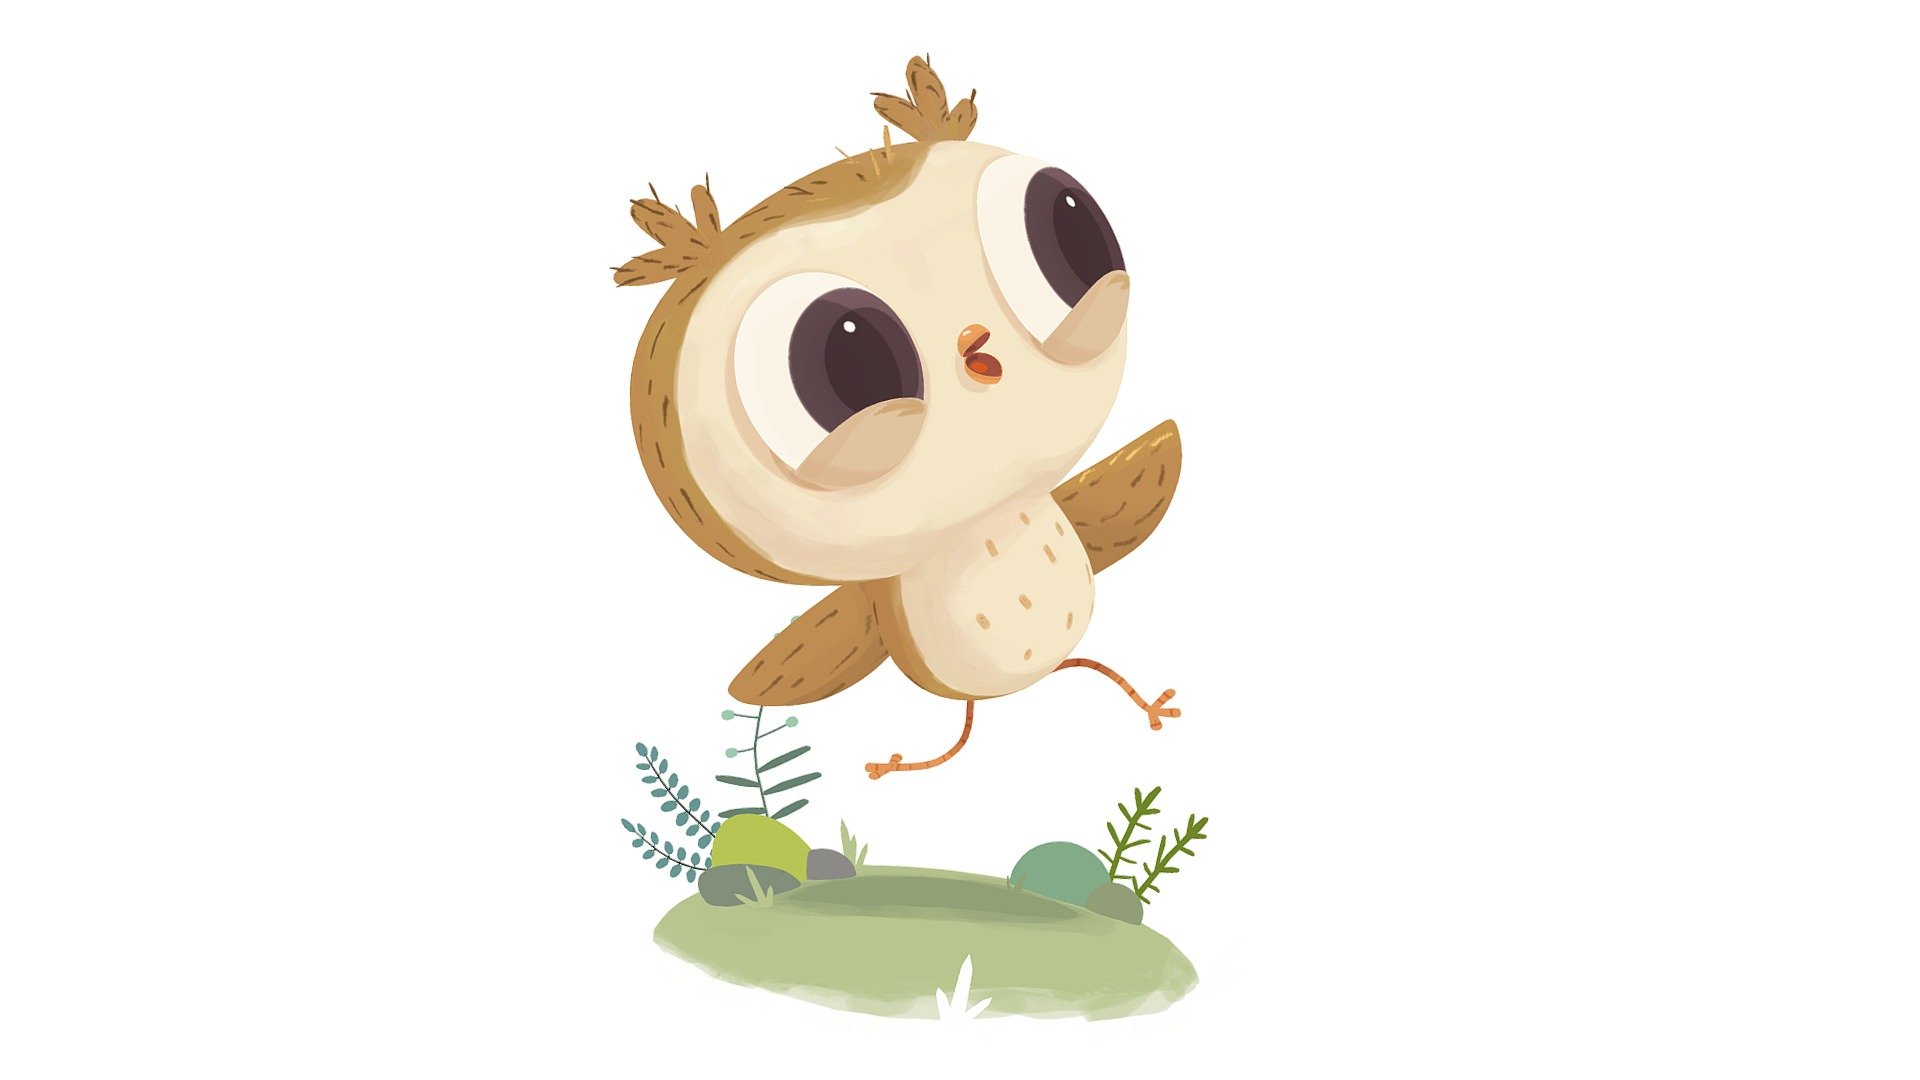 Little owl named Odo.

Original image by Alena Tkach:
https://www.behance.net/gallery/36922799/Odo - Odo - 3D model by Gregory Khodyrev (@gmaaailgrisha) 3d model